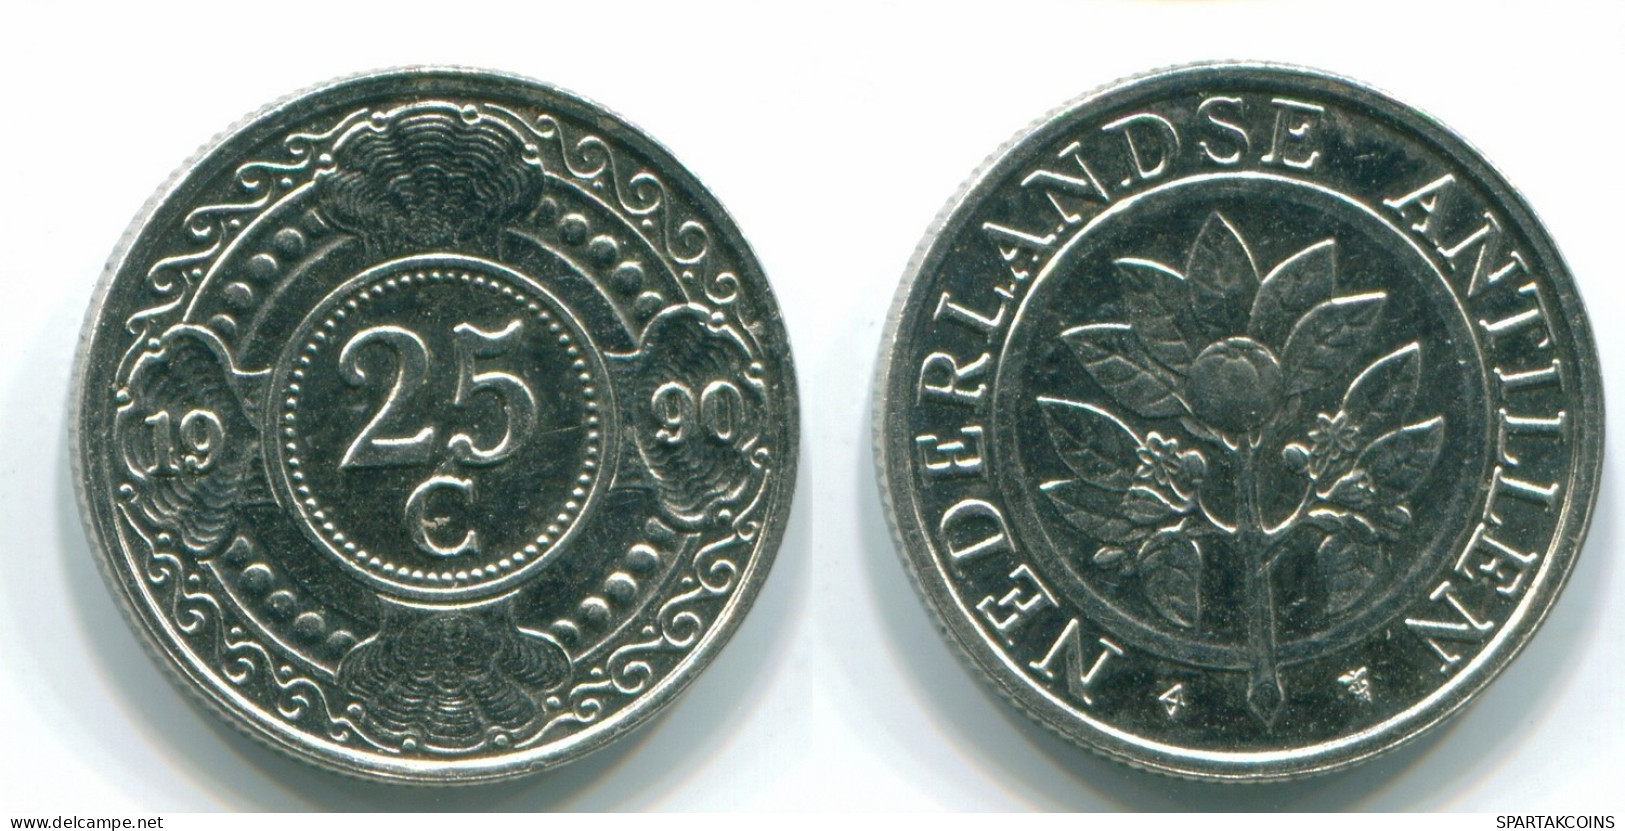 25 CENTS 1990 NIEDERLÄNDISCHE ANTILLEN Nickel Koloniale Münze #S11273.D.A - Niederländische Antillen